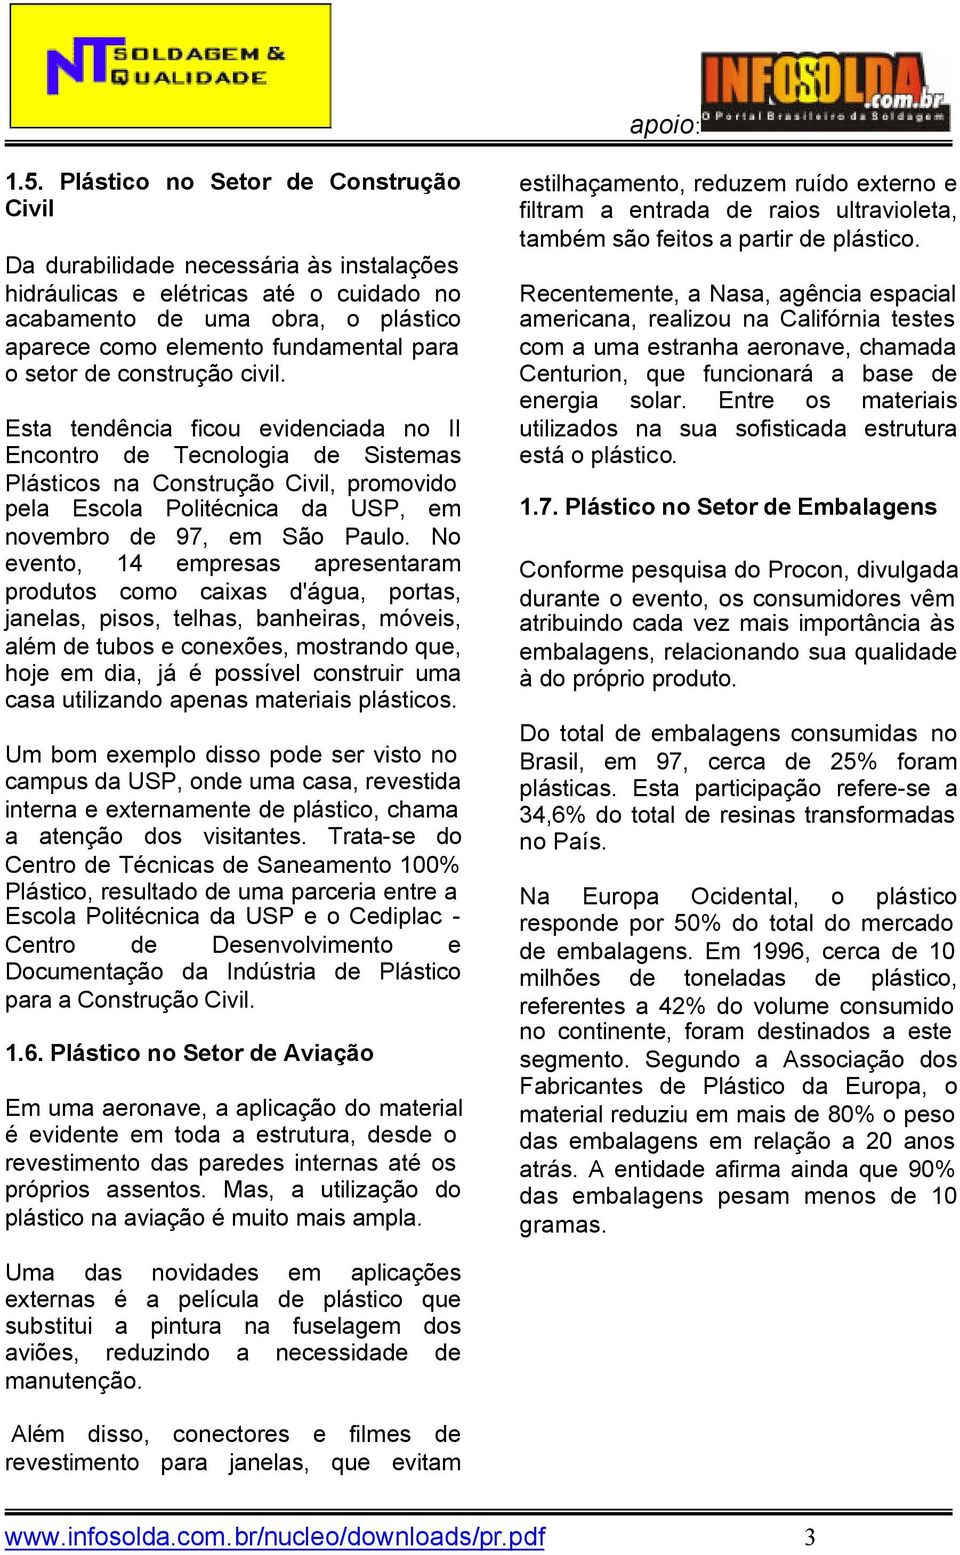 Esta tendência ficou evidenciada no II Encontro de Tecnologia de Sistemas Plásticos na Construção Civil, promovido pela Escola Politécnica da USP, em novembro de 97, em São Paulo.